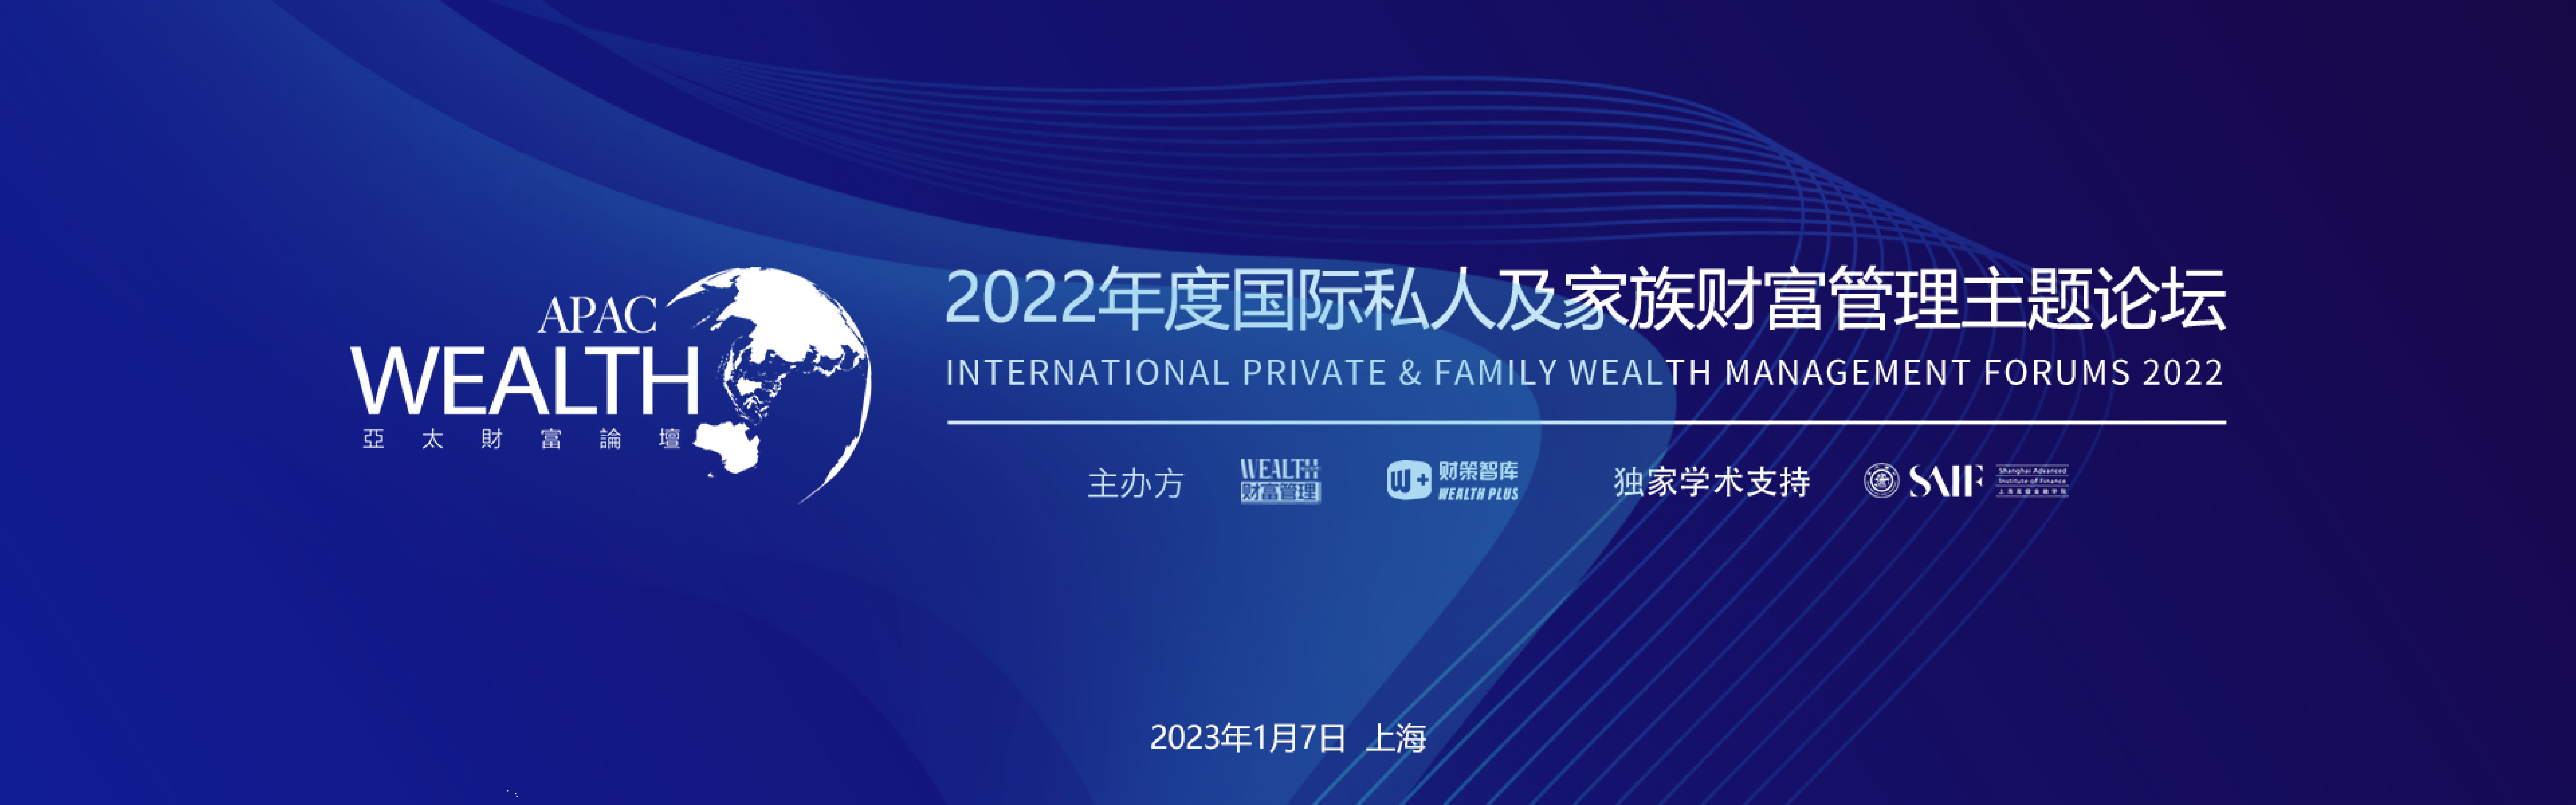 亚太财富论坛暨2022年度国际私人及家族财富管理行业颁奖盛典